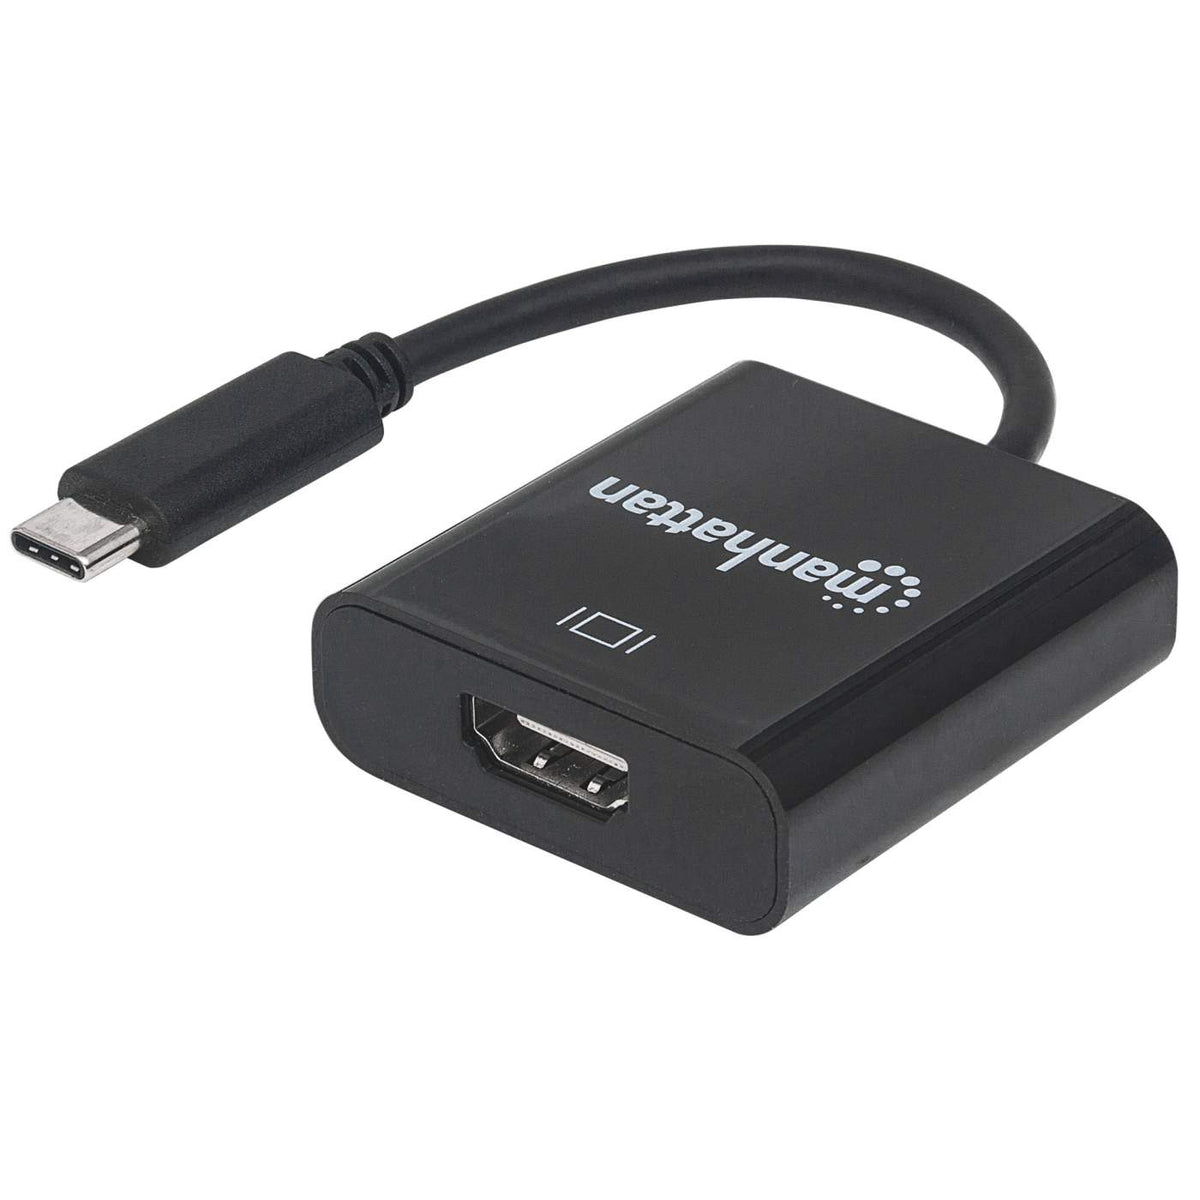 New Adaptador USB Tipo C a HDMI, USB 3,1 Convertidor Macho A Hembra MacBook